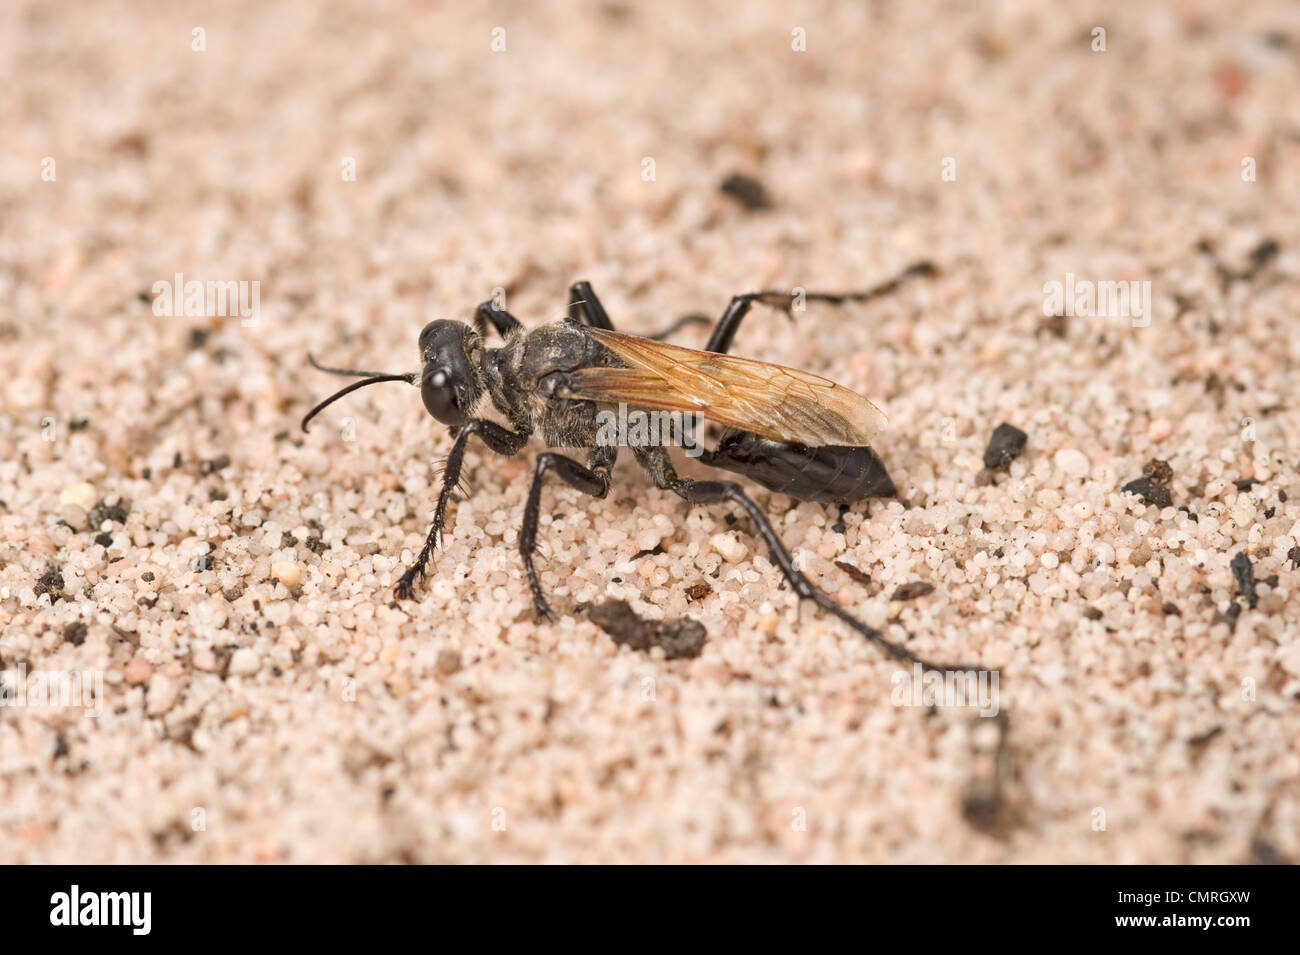 Australian digger wasp - un prédateur des criquets Banque D'Images